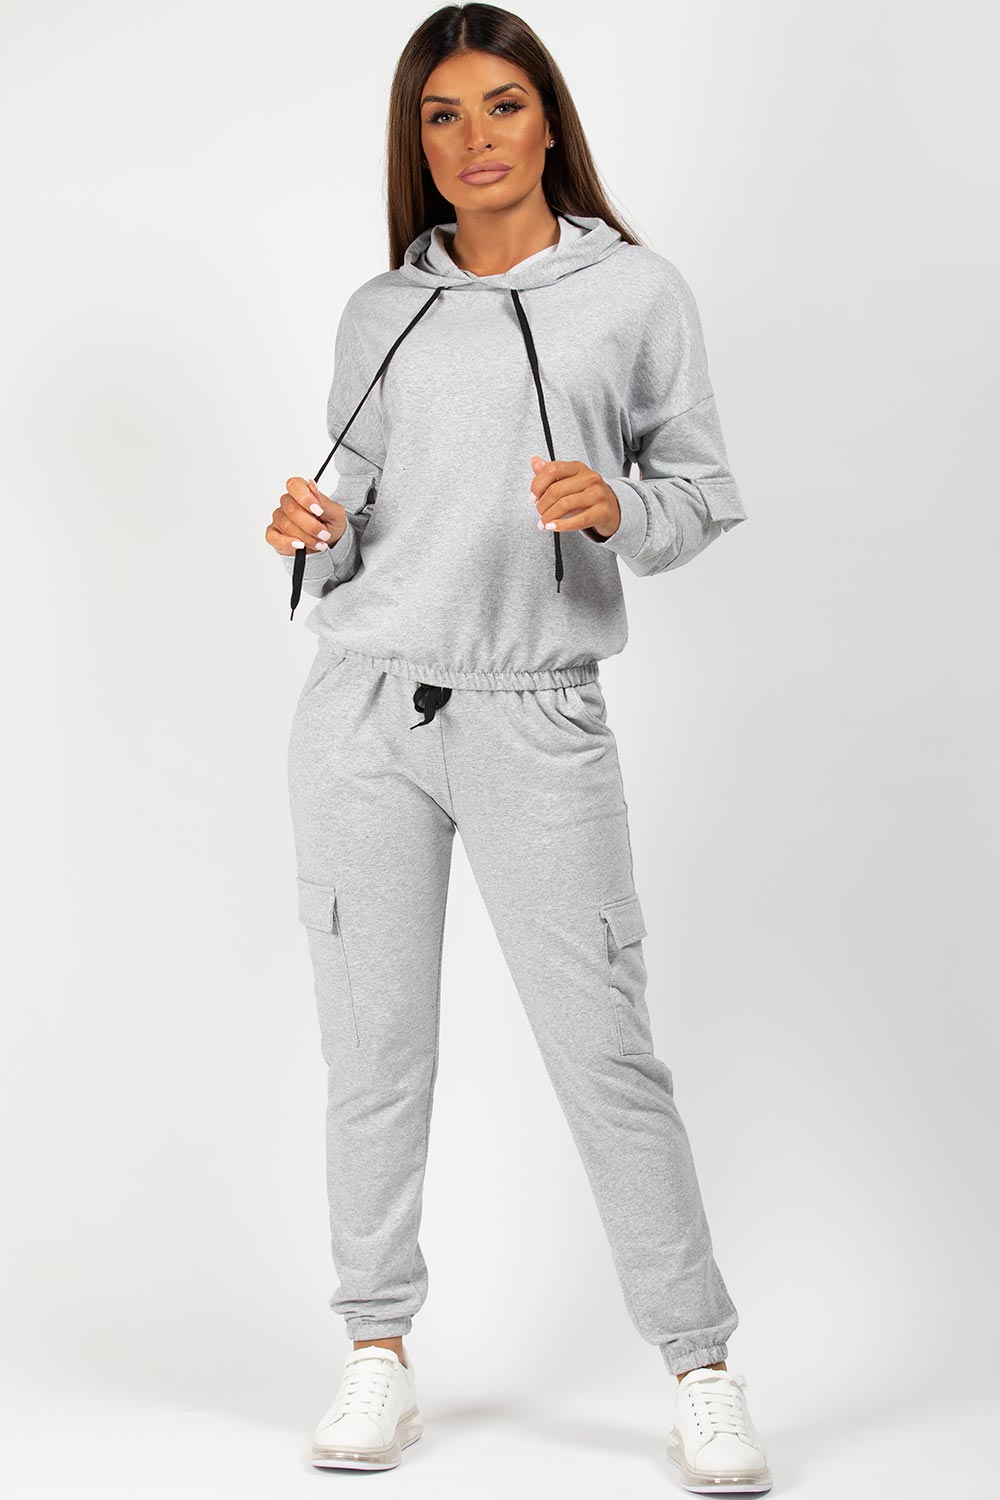 Oversized Hooded Loungewear Co-Ord Set – Styledup.co.uk